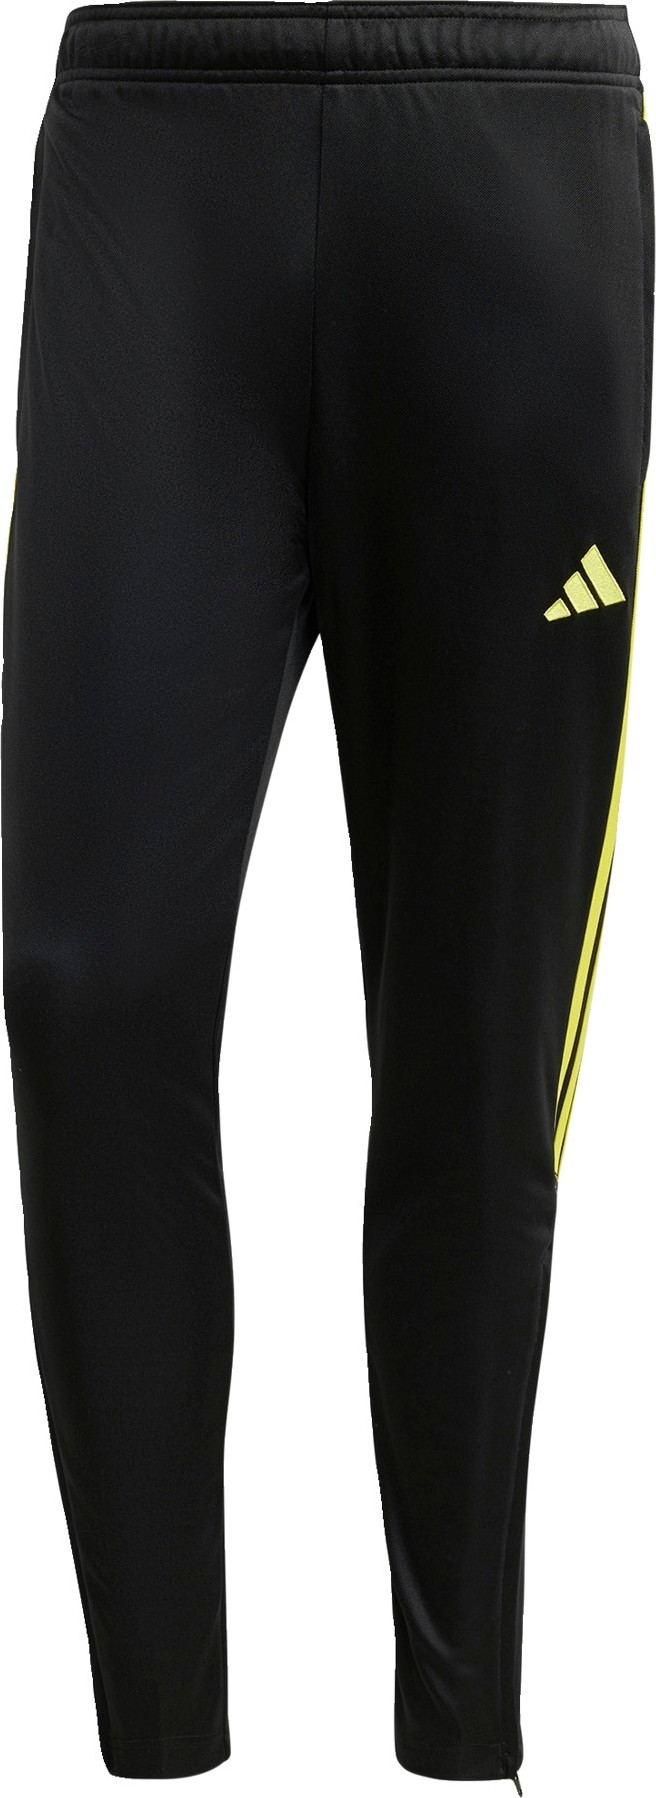 ADIDAS PERFORMANCE Sportovní kalhoty 'Tiro' žlutá / černá